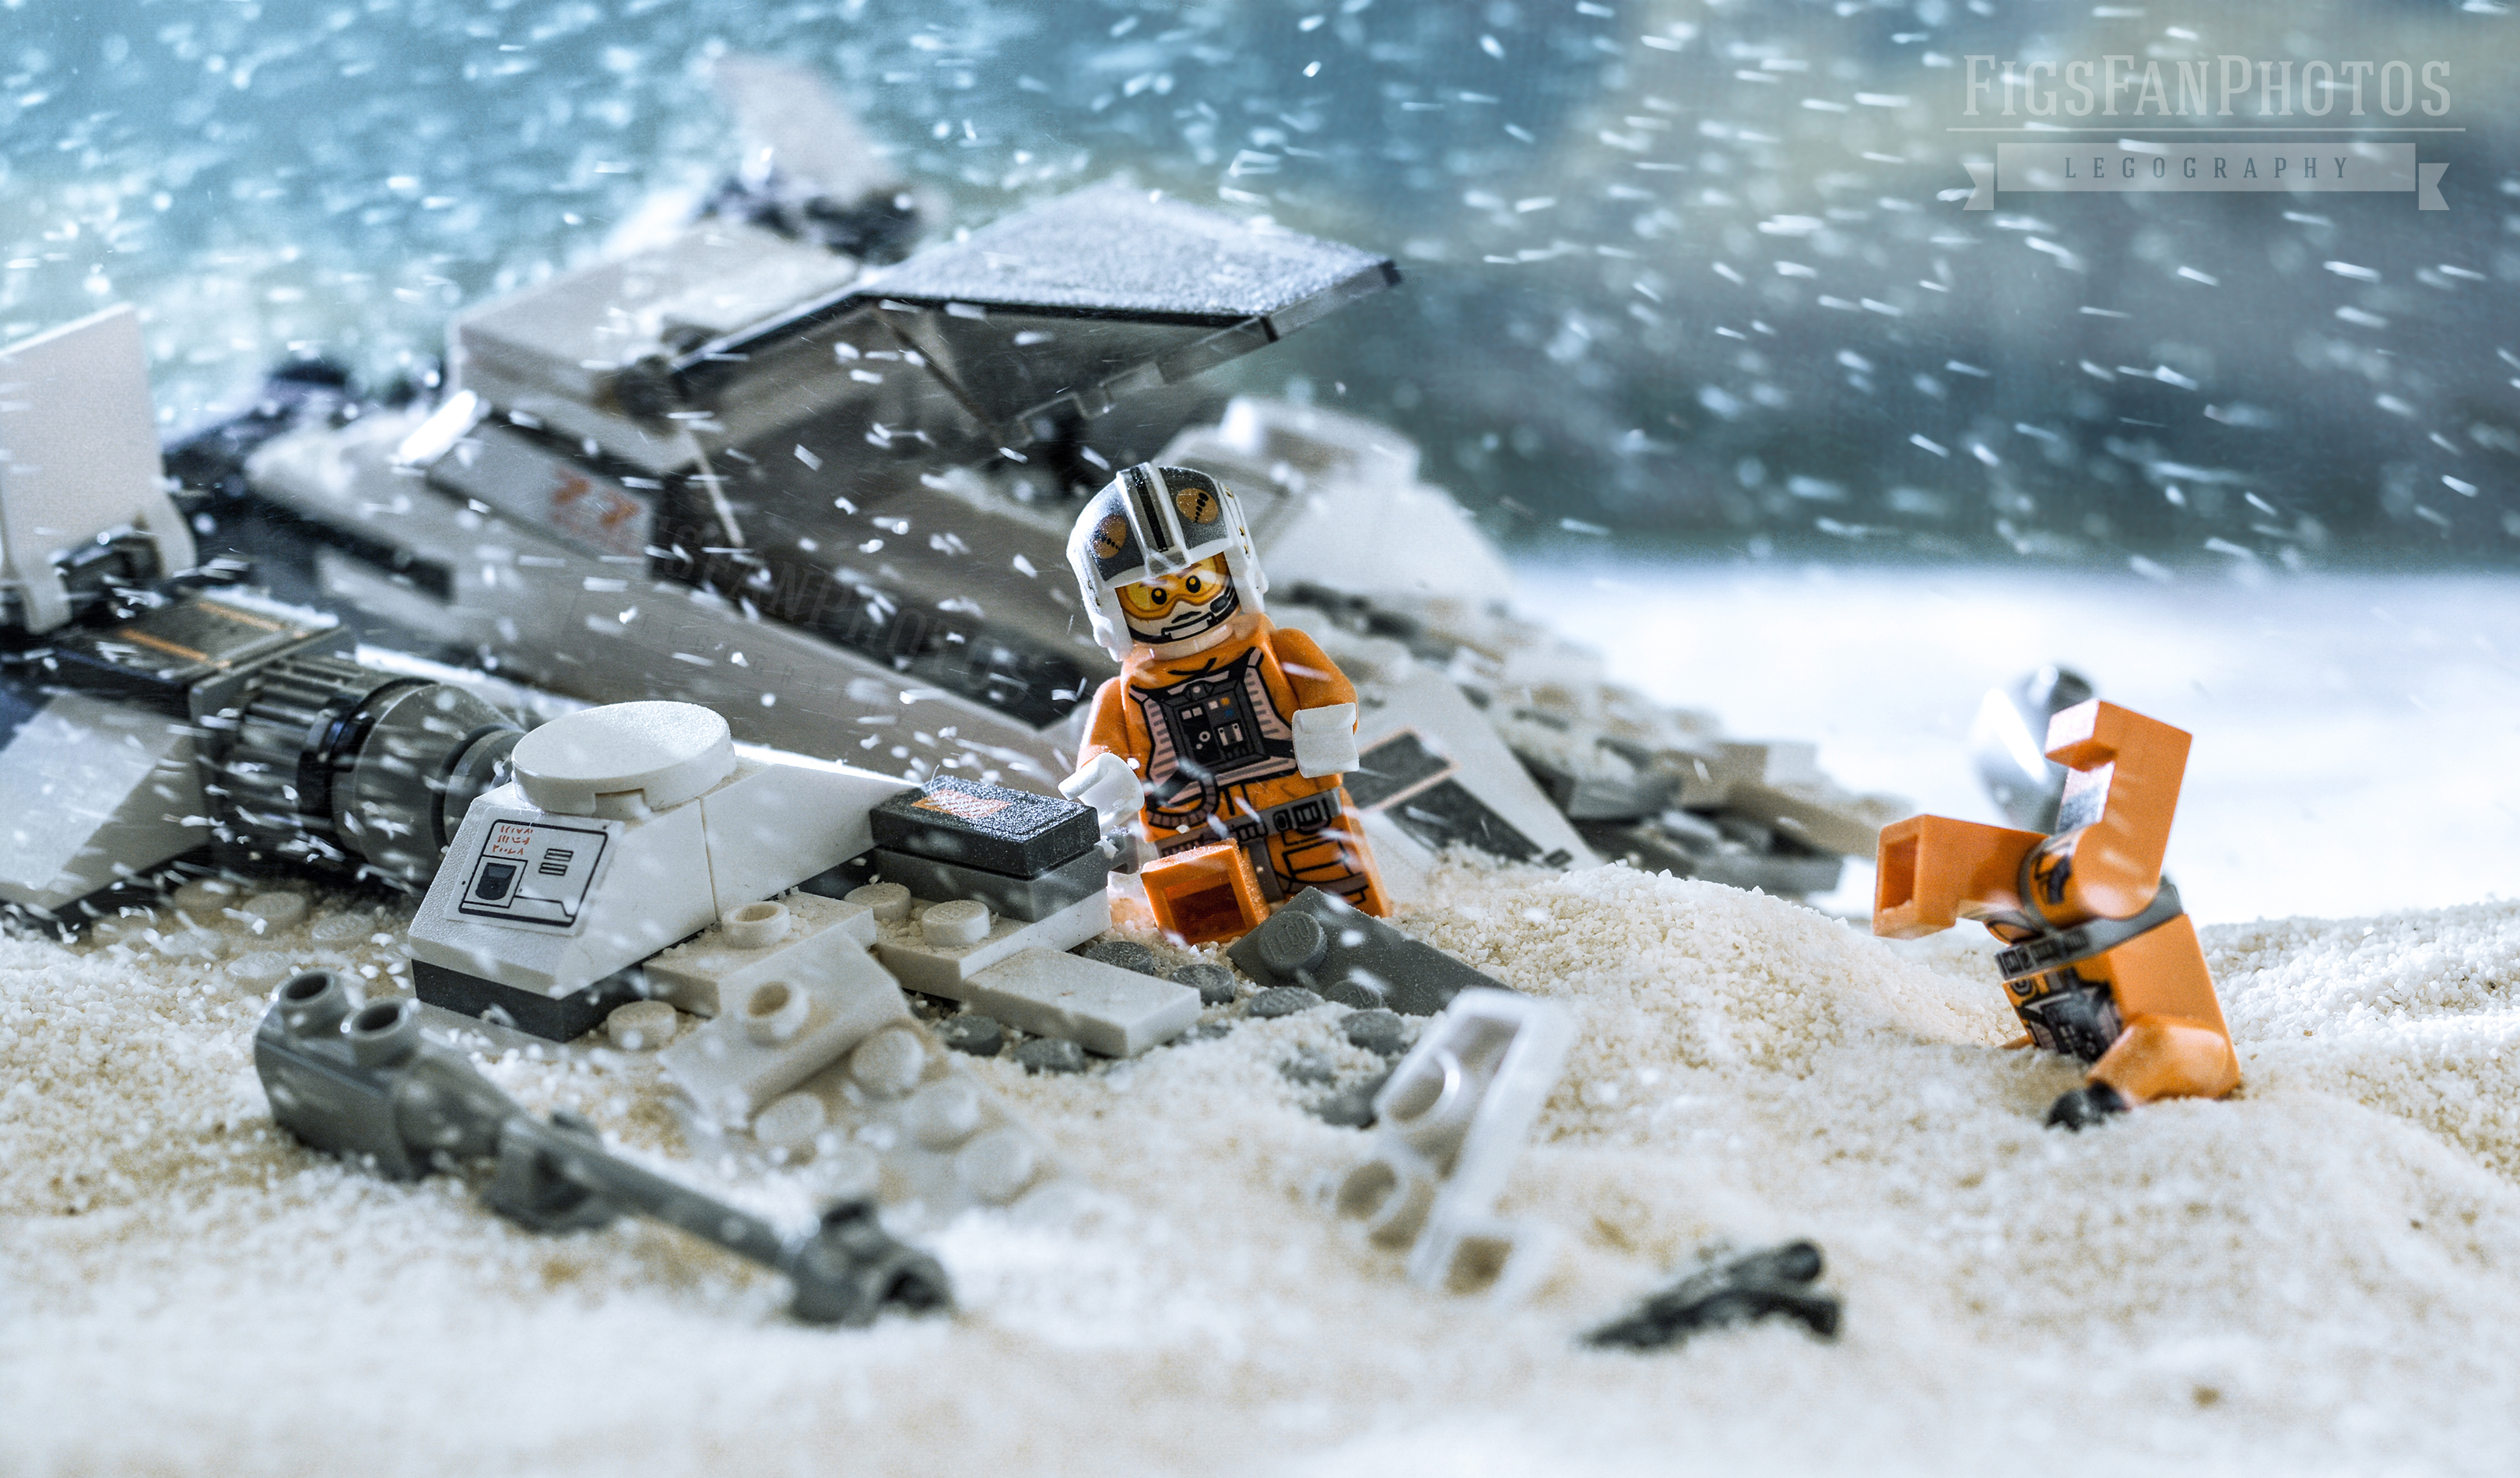 LEGO Star Wars, ahogy még nem láttad! - Figs Fan Photos I.